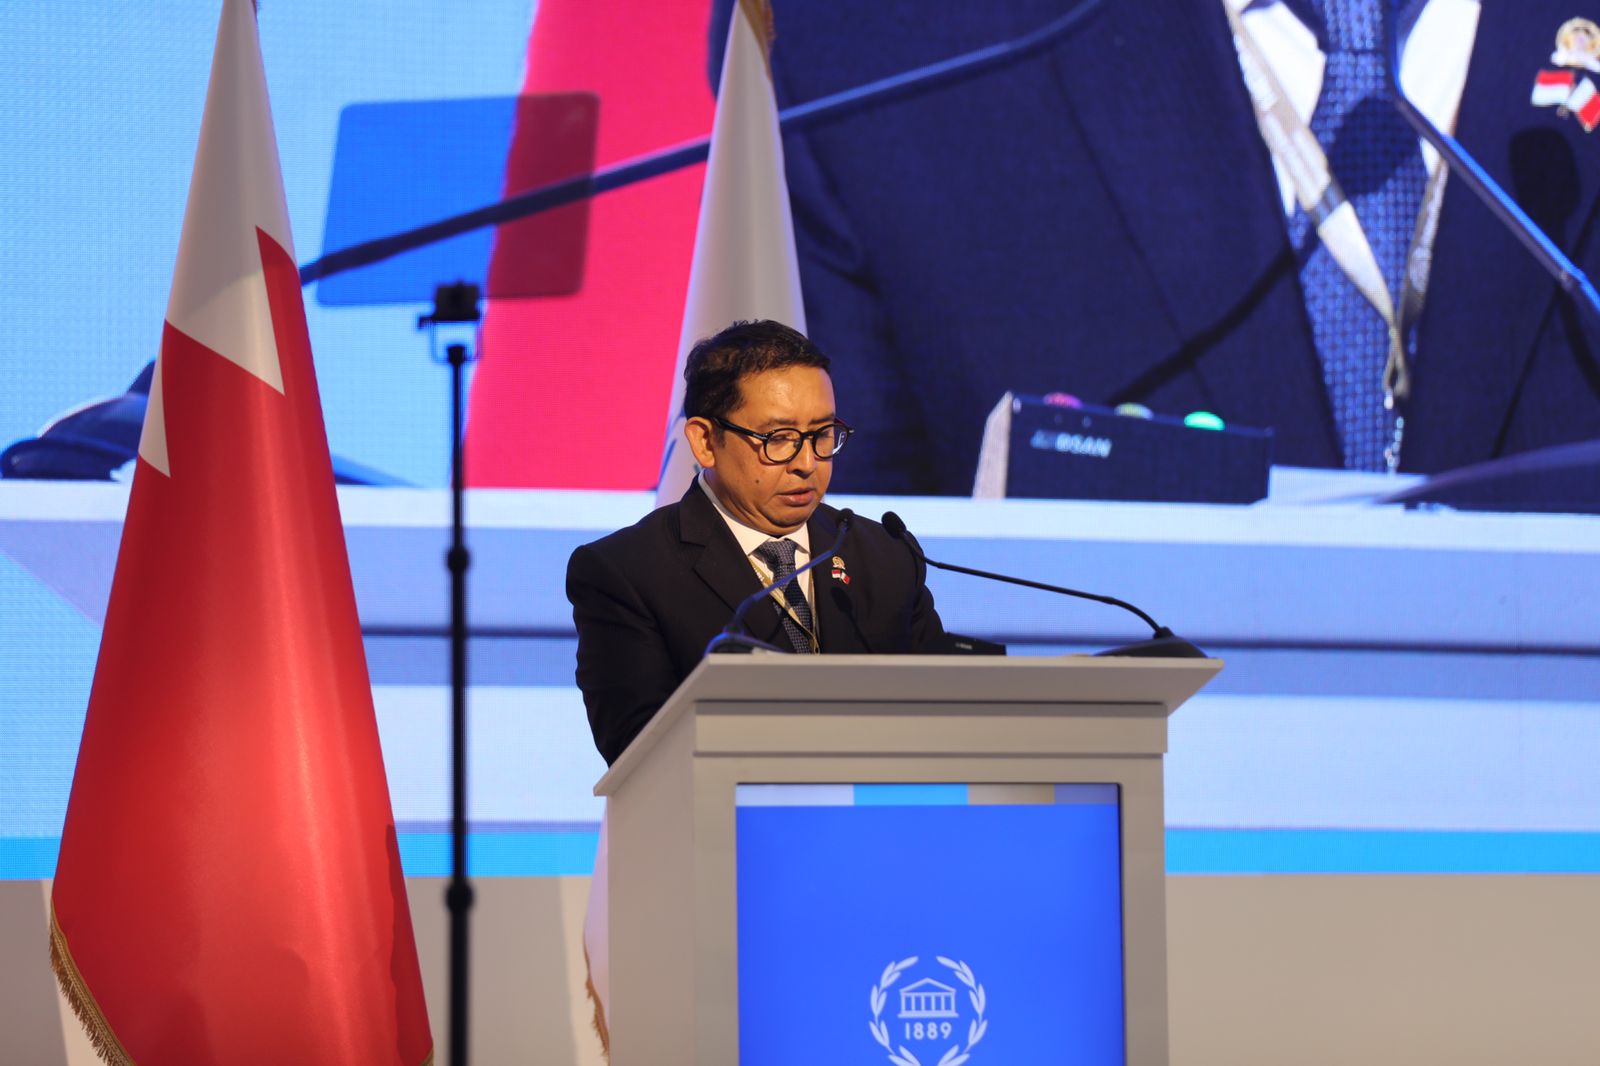 Di IPU Bahrain, Delegasi Indonesia Alihkan Dukungan Draf Emergency Item ke Qatar